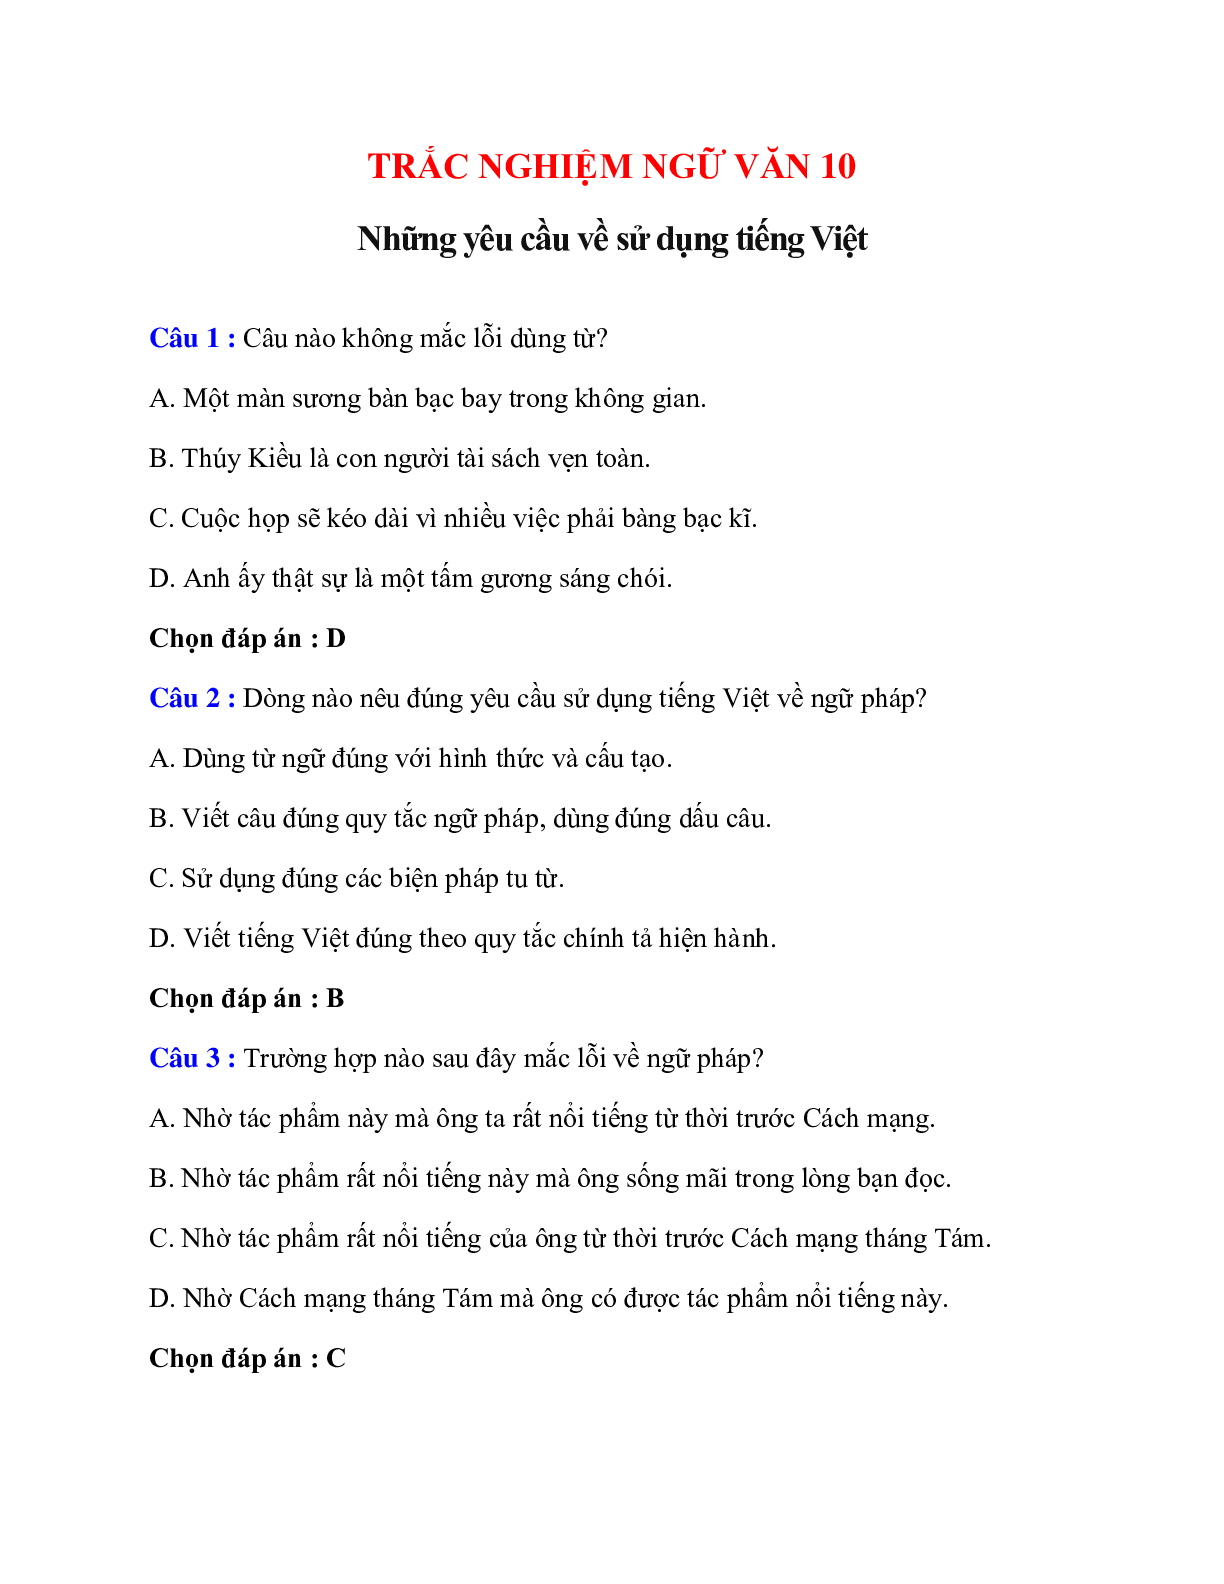 Trắc nghiệm Những yêu cầu về sử dụng tiếng Việt có đáp án – Ngữ văn lớp 10 (trang 1)